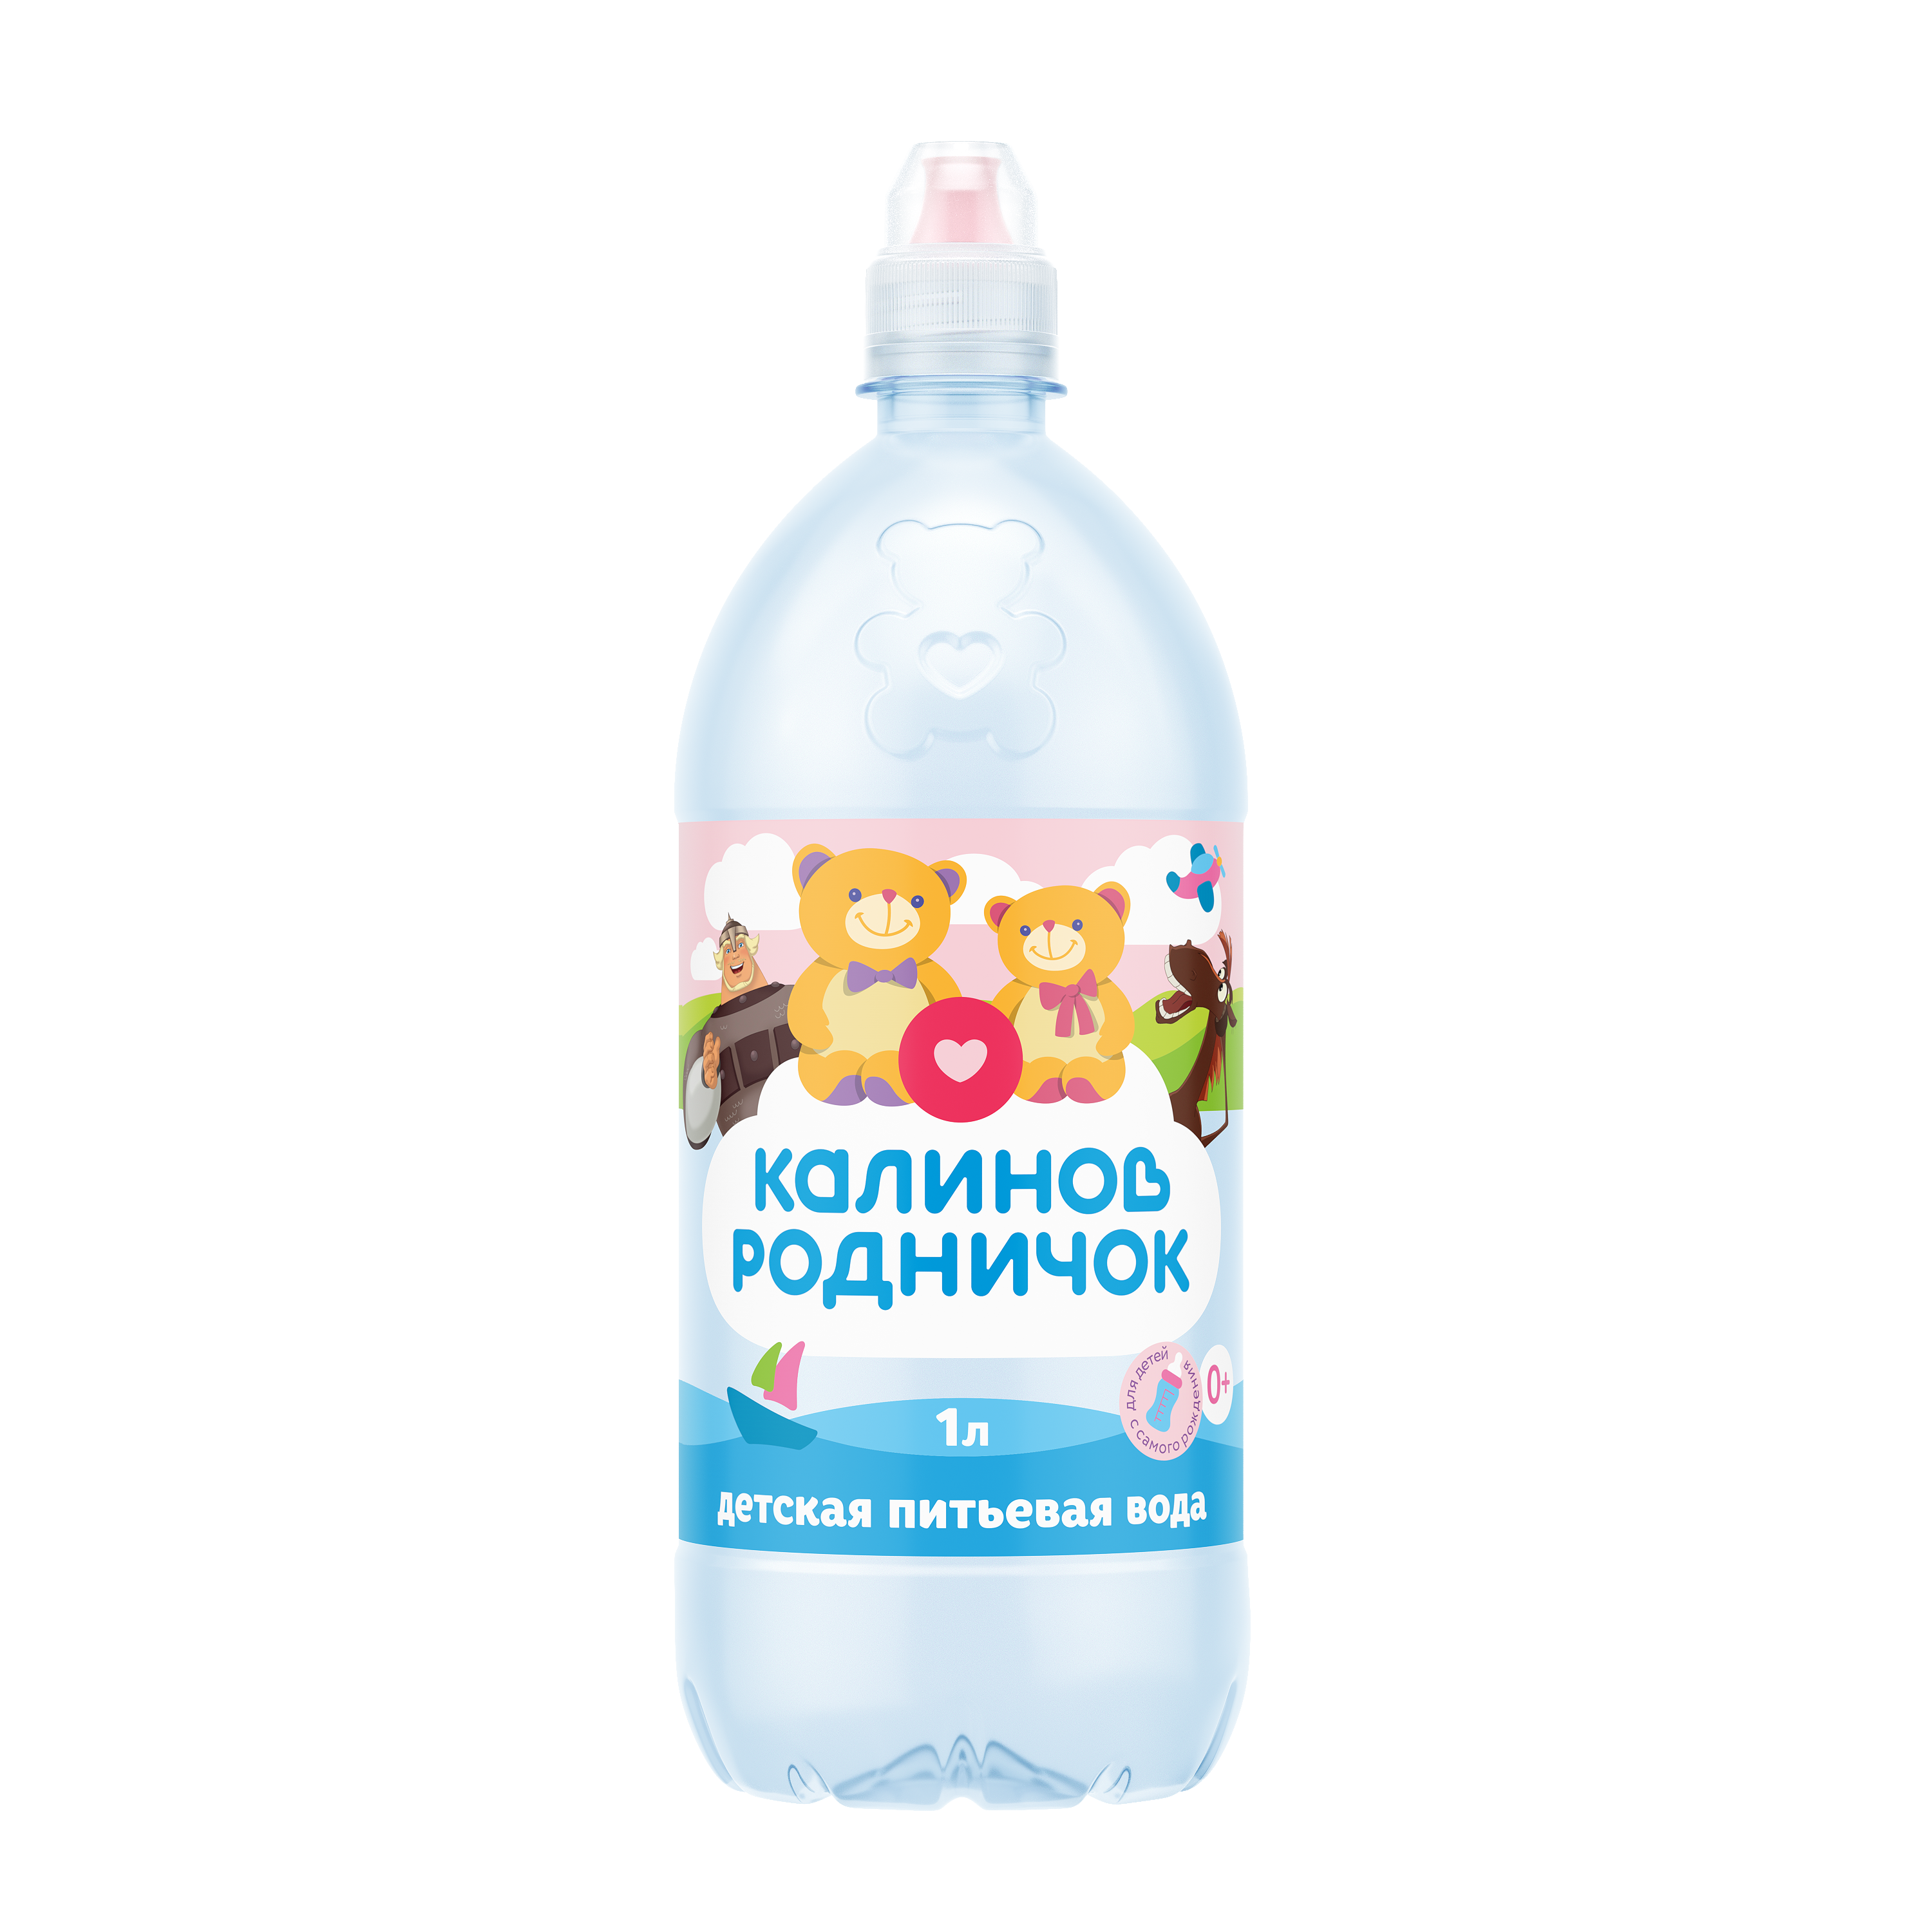 Детская вода «Калинов Родничок» спорт,  негазированная, 1 л. – доставка воды «Калинов Родник»